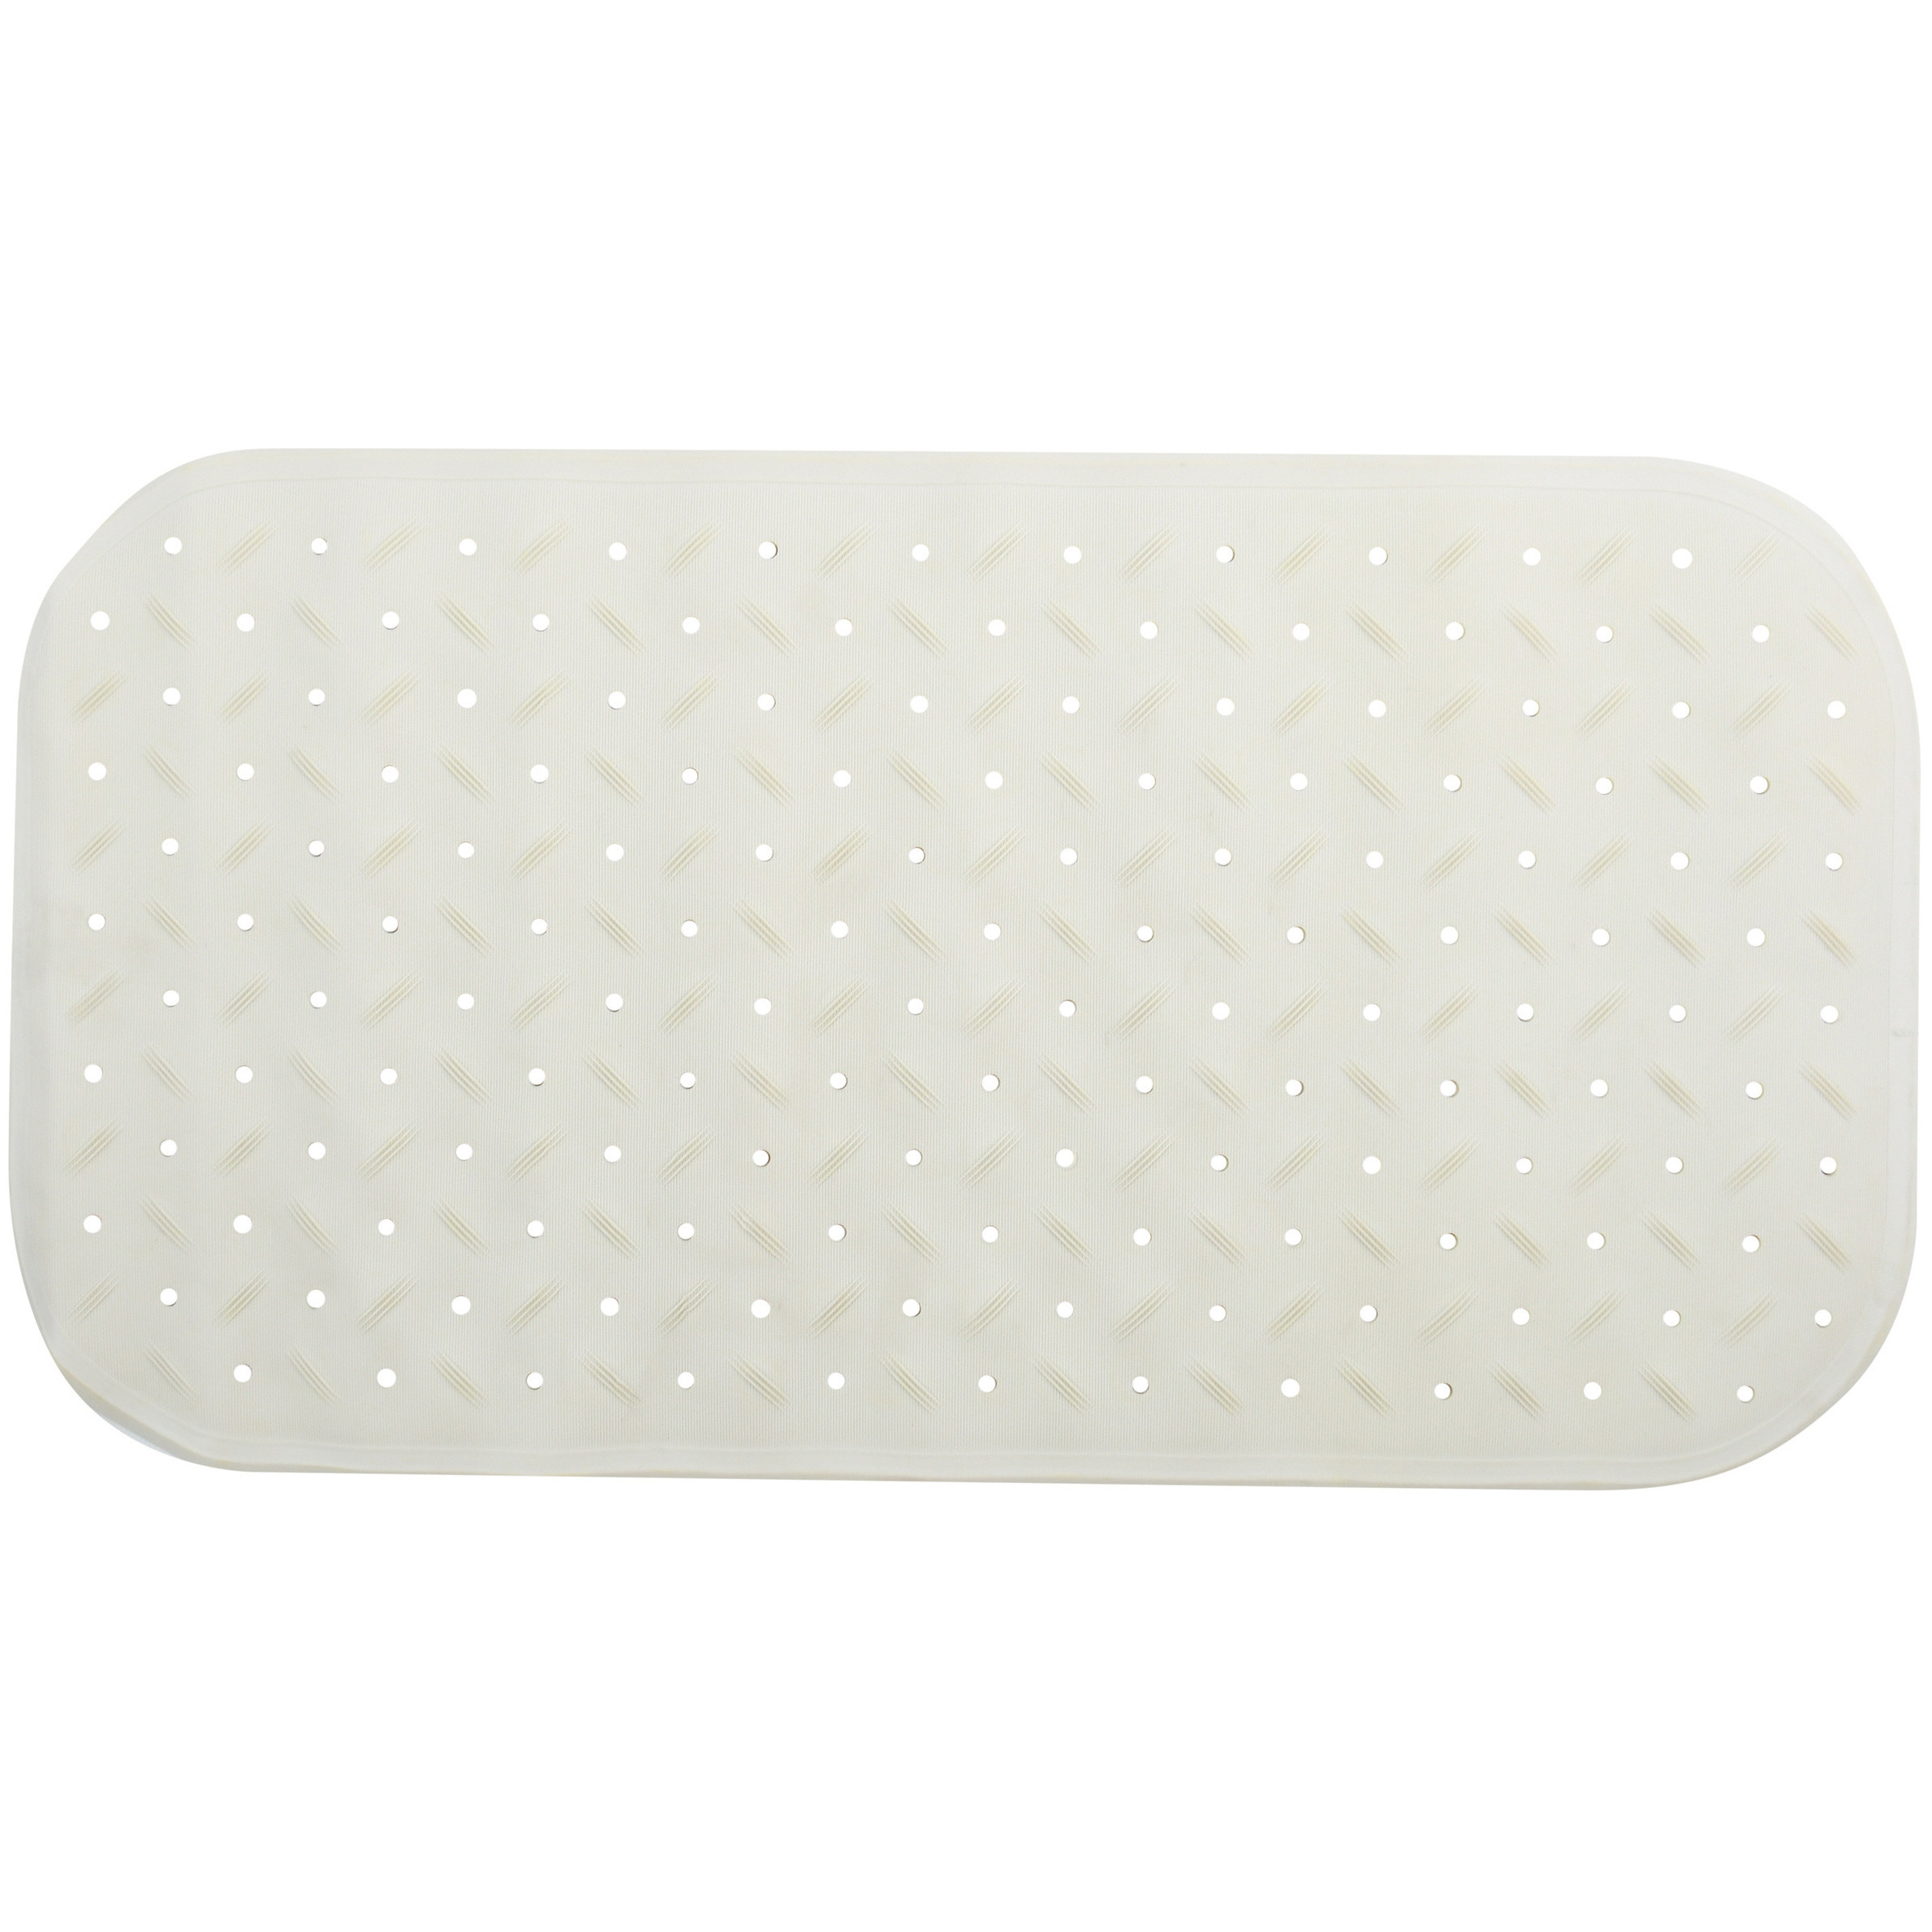 Douche-bad anti-slip mat badkamer rubber wit 36 x 65 cm rechthoek